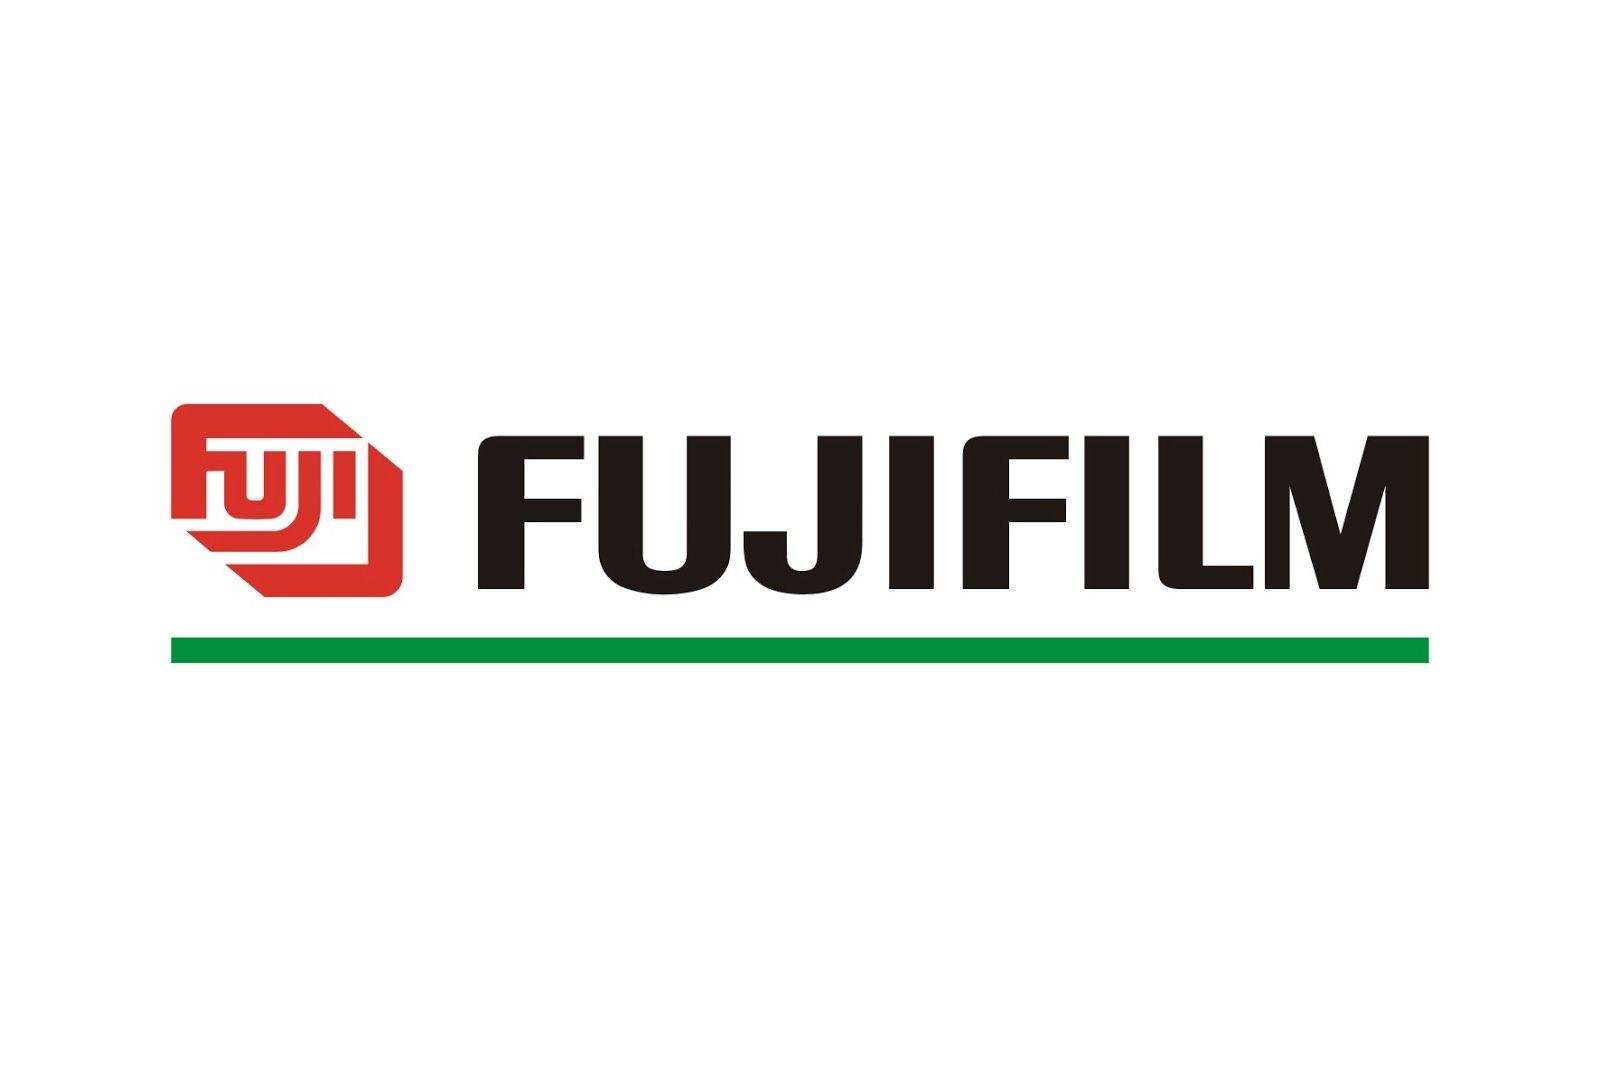 Old Fujifilm Logo - Fujifilm Logos